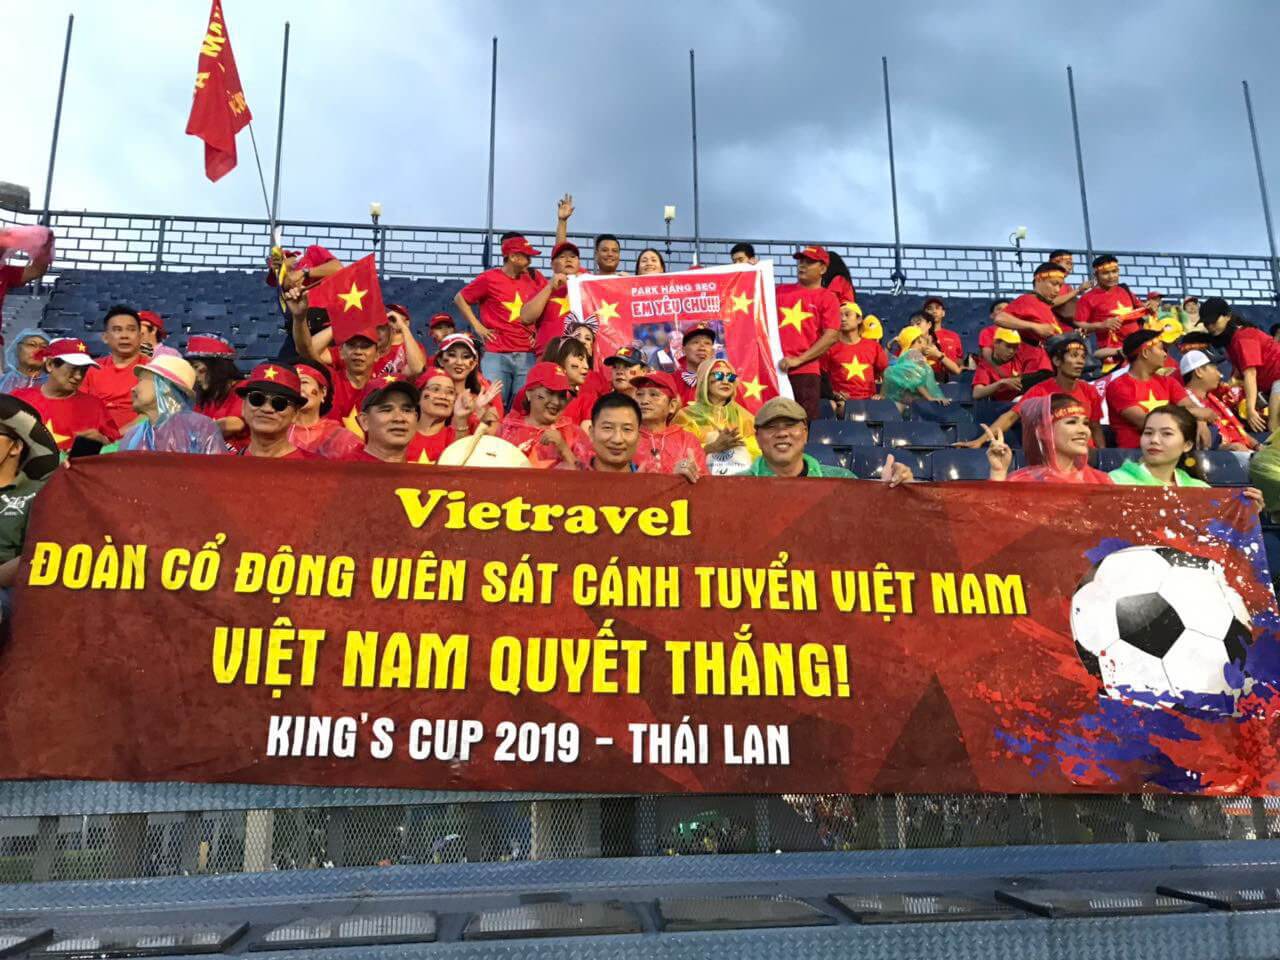 Bay ngay sang Thái, 'cháy' hết mình cùng đội tuyển Việt Nam tranh chức vô địch King’s Cup 2019